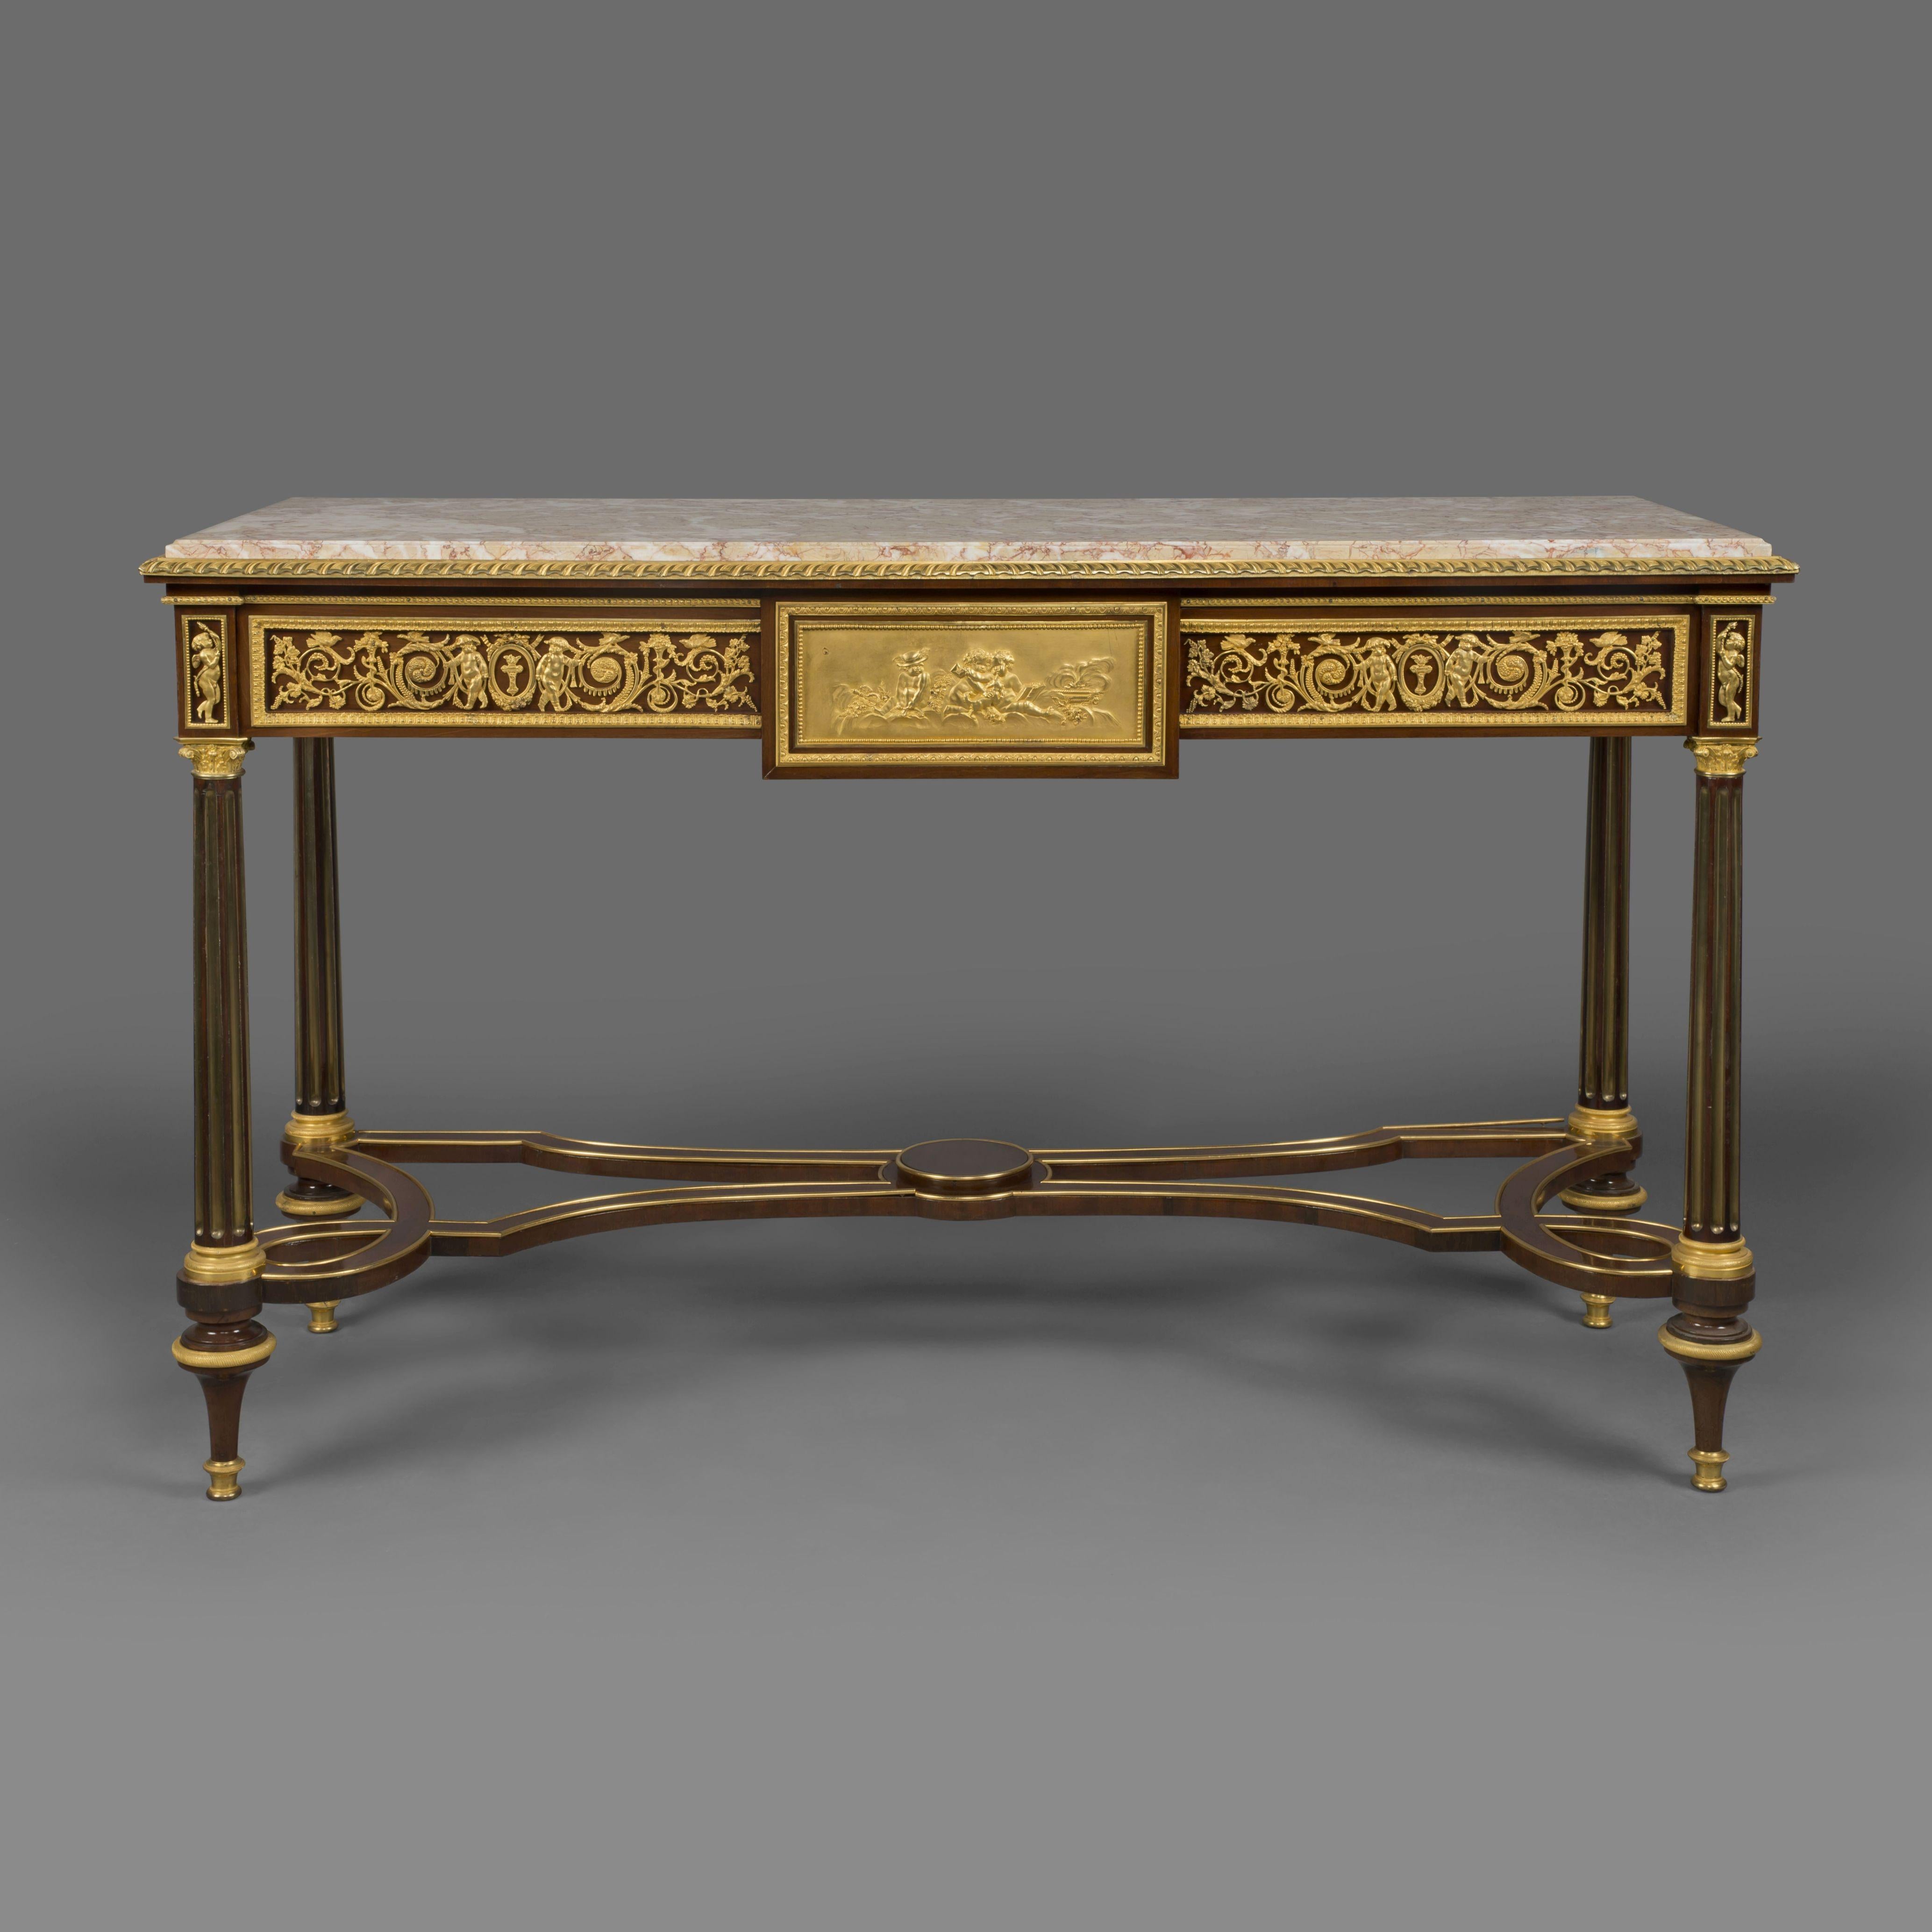 Ein feines Paar Konsolentische aus Mahagoni im Louis XVI-Stil mit vergoldeter Bronze, in der Art von Adam Weisweiler.

Jeder Tisch hat eine rechteckige Marmorplatte mit Fleur de Pecher über drei Schubladen mit einem Blattfries. Die Tische stehen